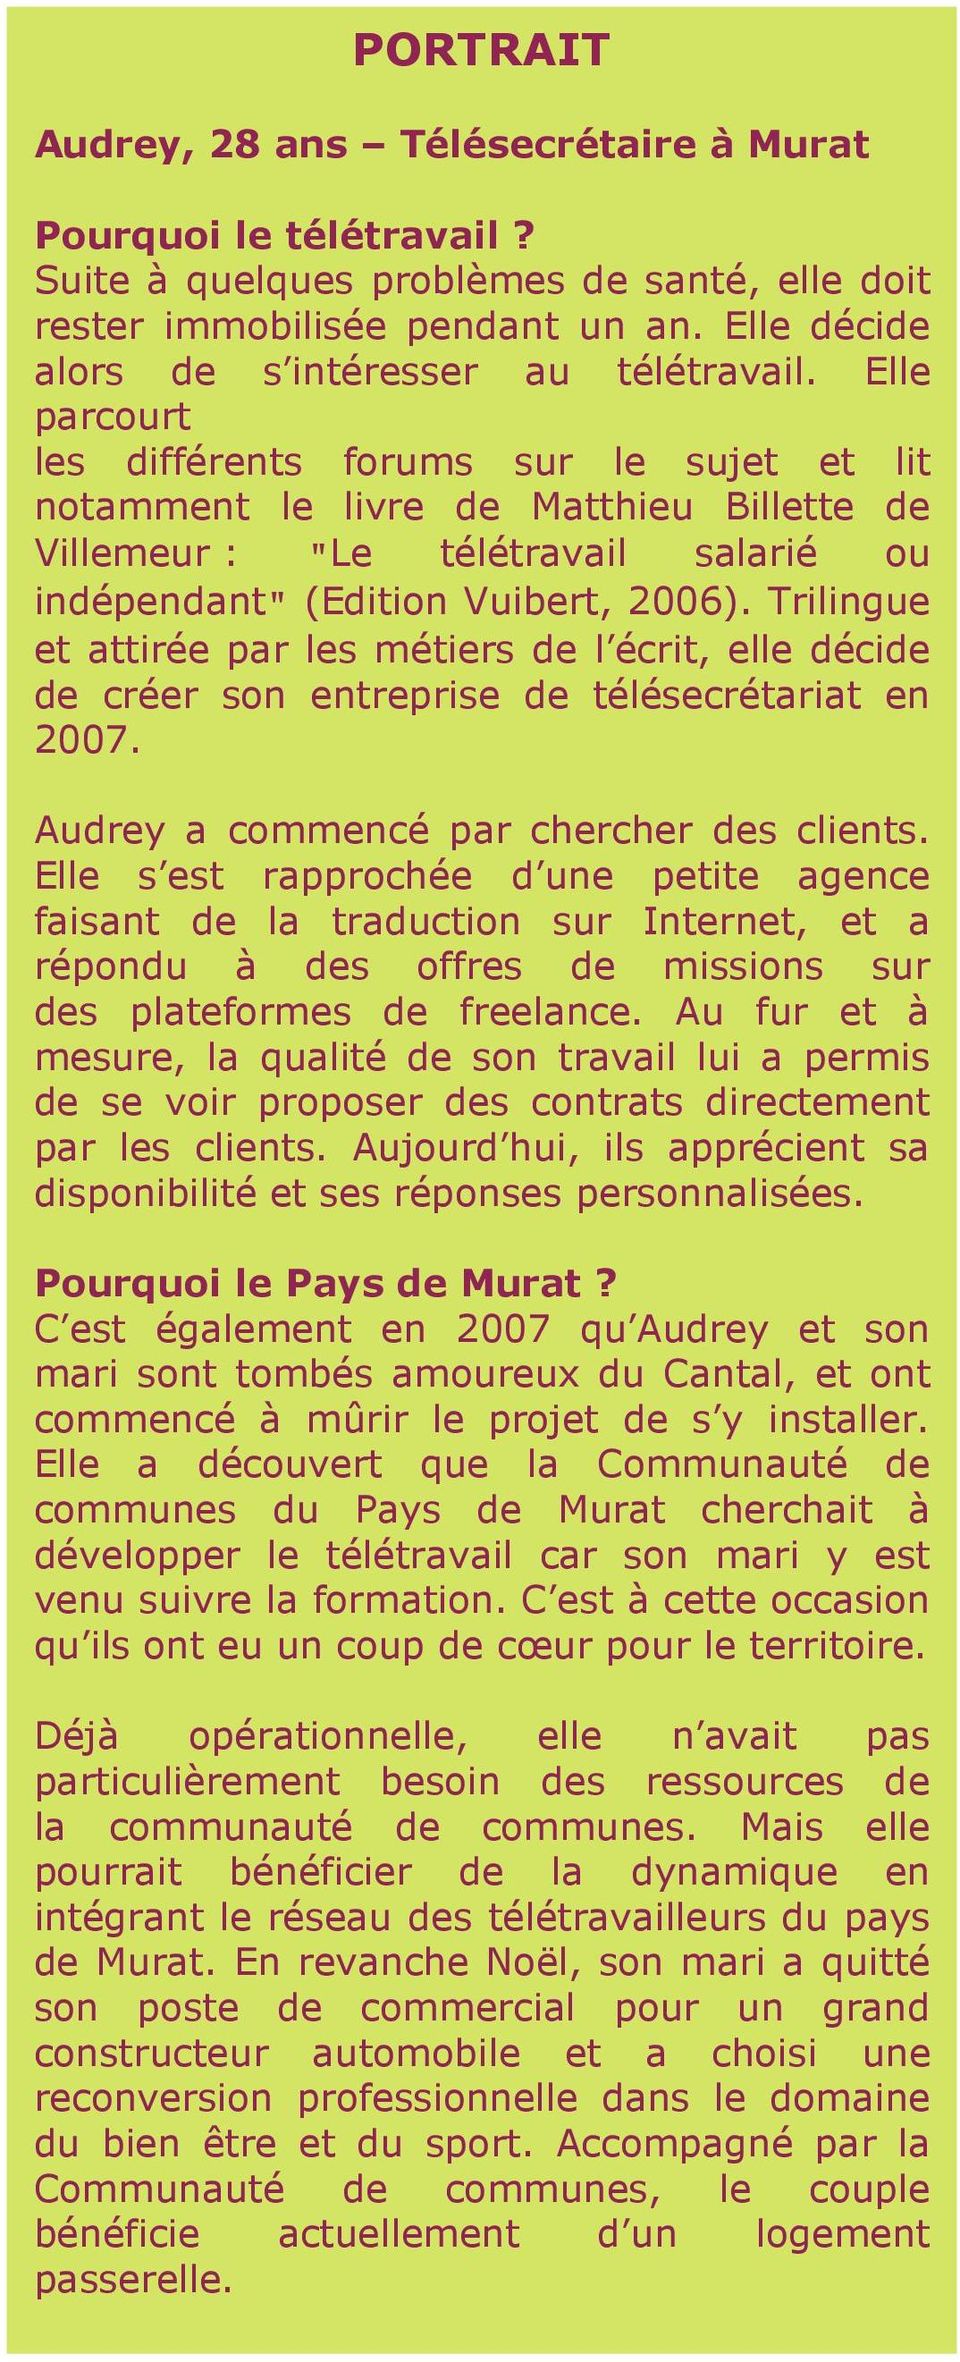 Elle parcourt les différents forums sur le sujet et lit notamment le livre de Matthieu Billette de Villemeur : "Le télétravail salarié ou indépendant" (Edition Vuibert, 2006).